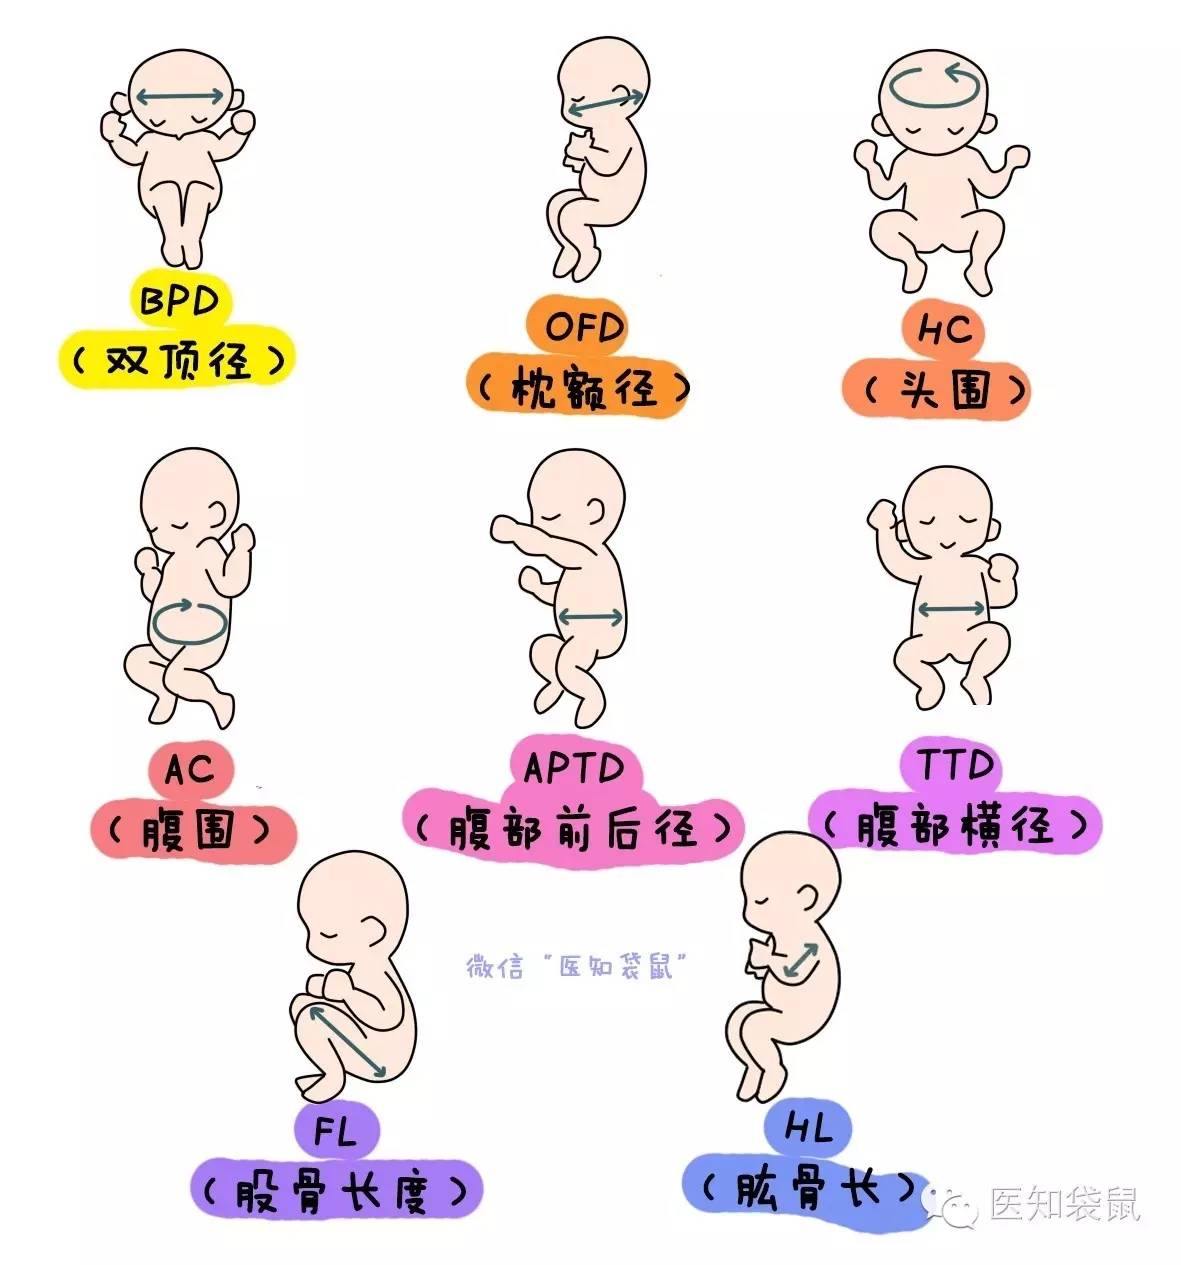 包括:       1,查看胎位:看宝宝是头位,臀位,横位还是其他胎位?